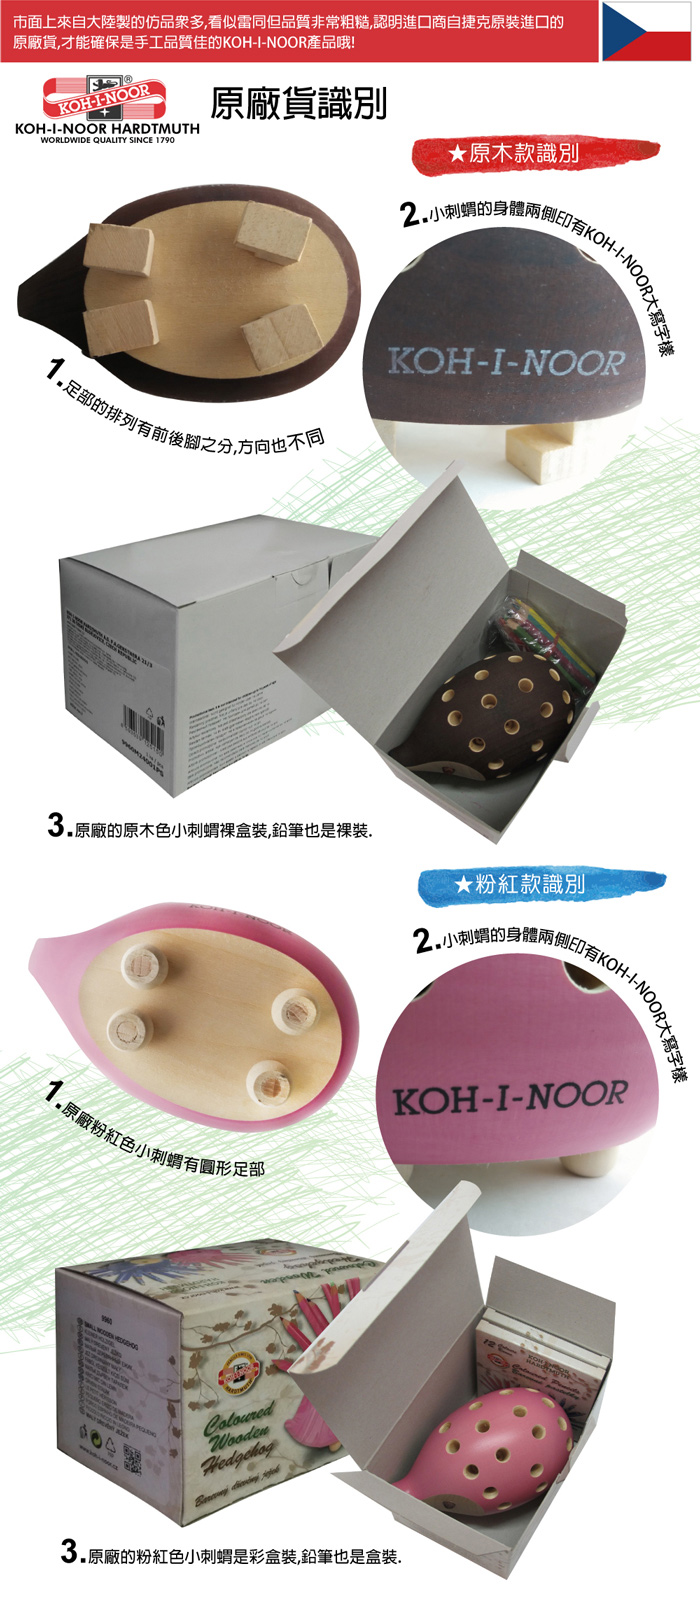 KOH-I-NOOR刺蝟筆假貨與山寨品識別,認明原廠商品